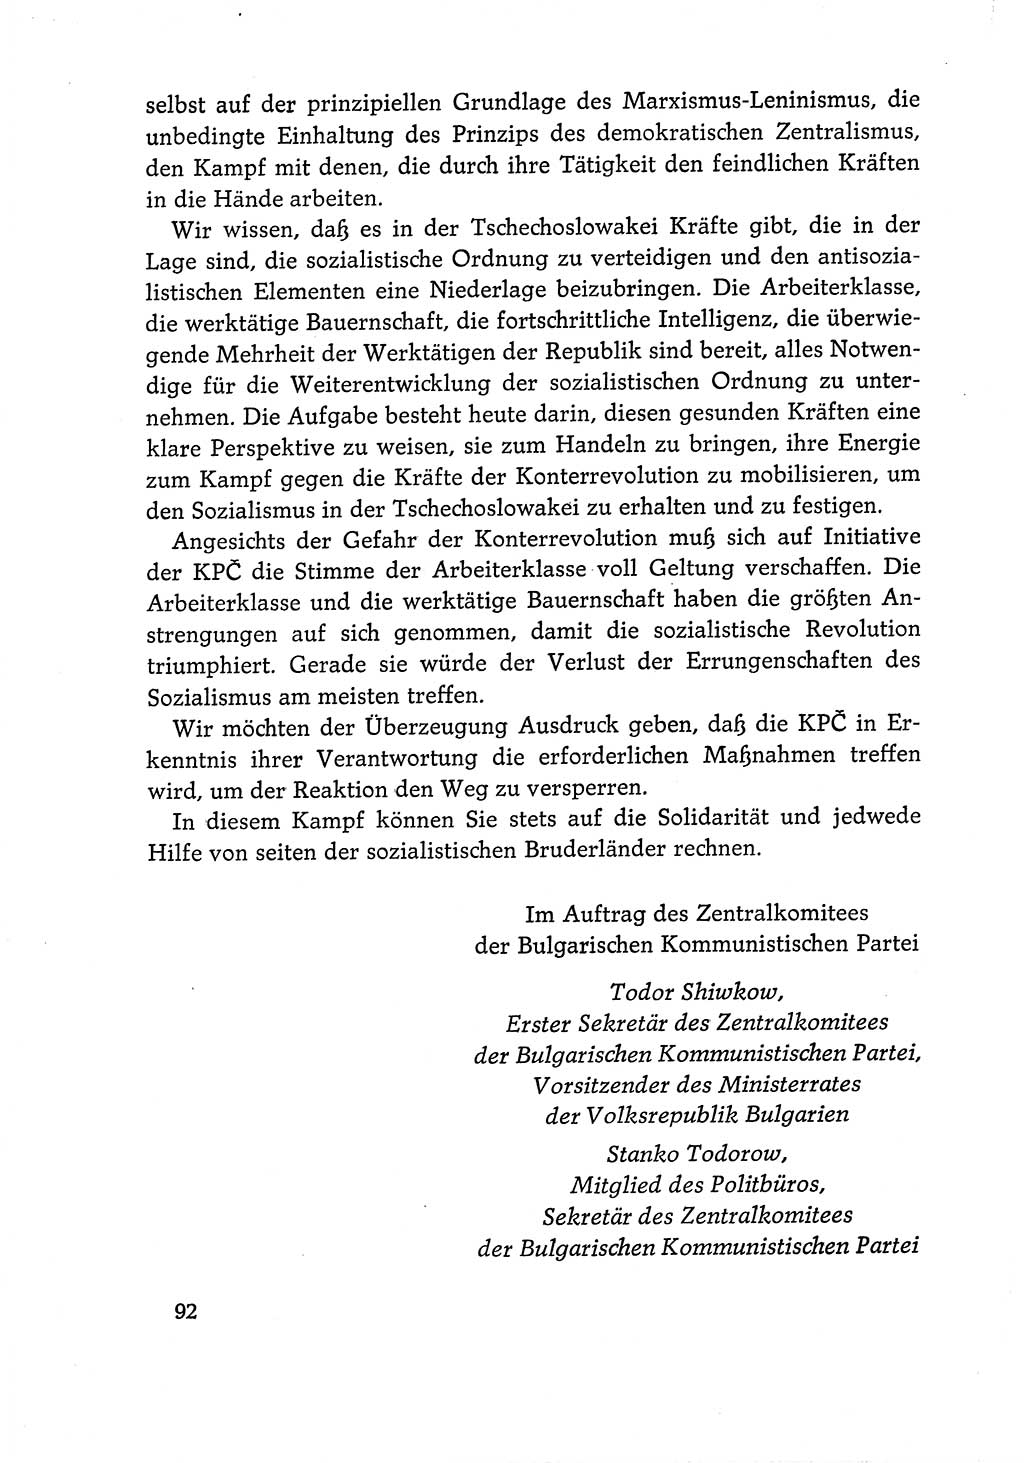 Dokumente der Sozialistischen Einheitspartei Deutschlands (SED) [Deutsche Demokratische Republik (DDR)] 1968-1969, Seite 92 (Dok. SED DDR 1968-1969, S. 92)